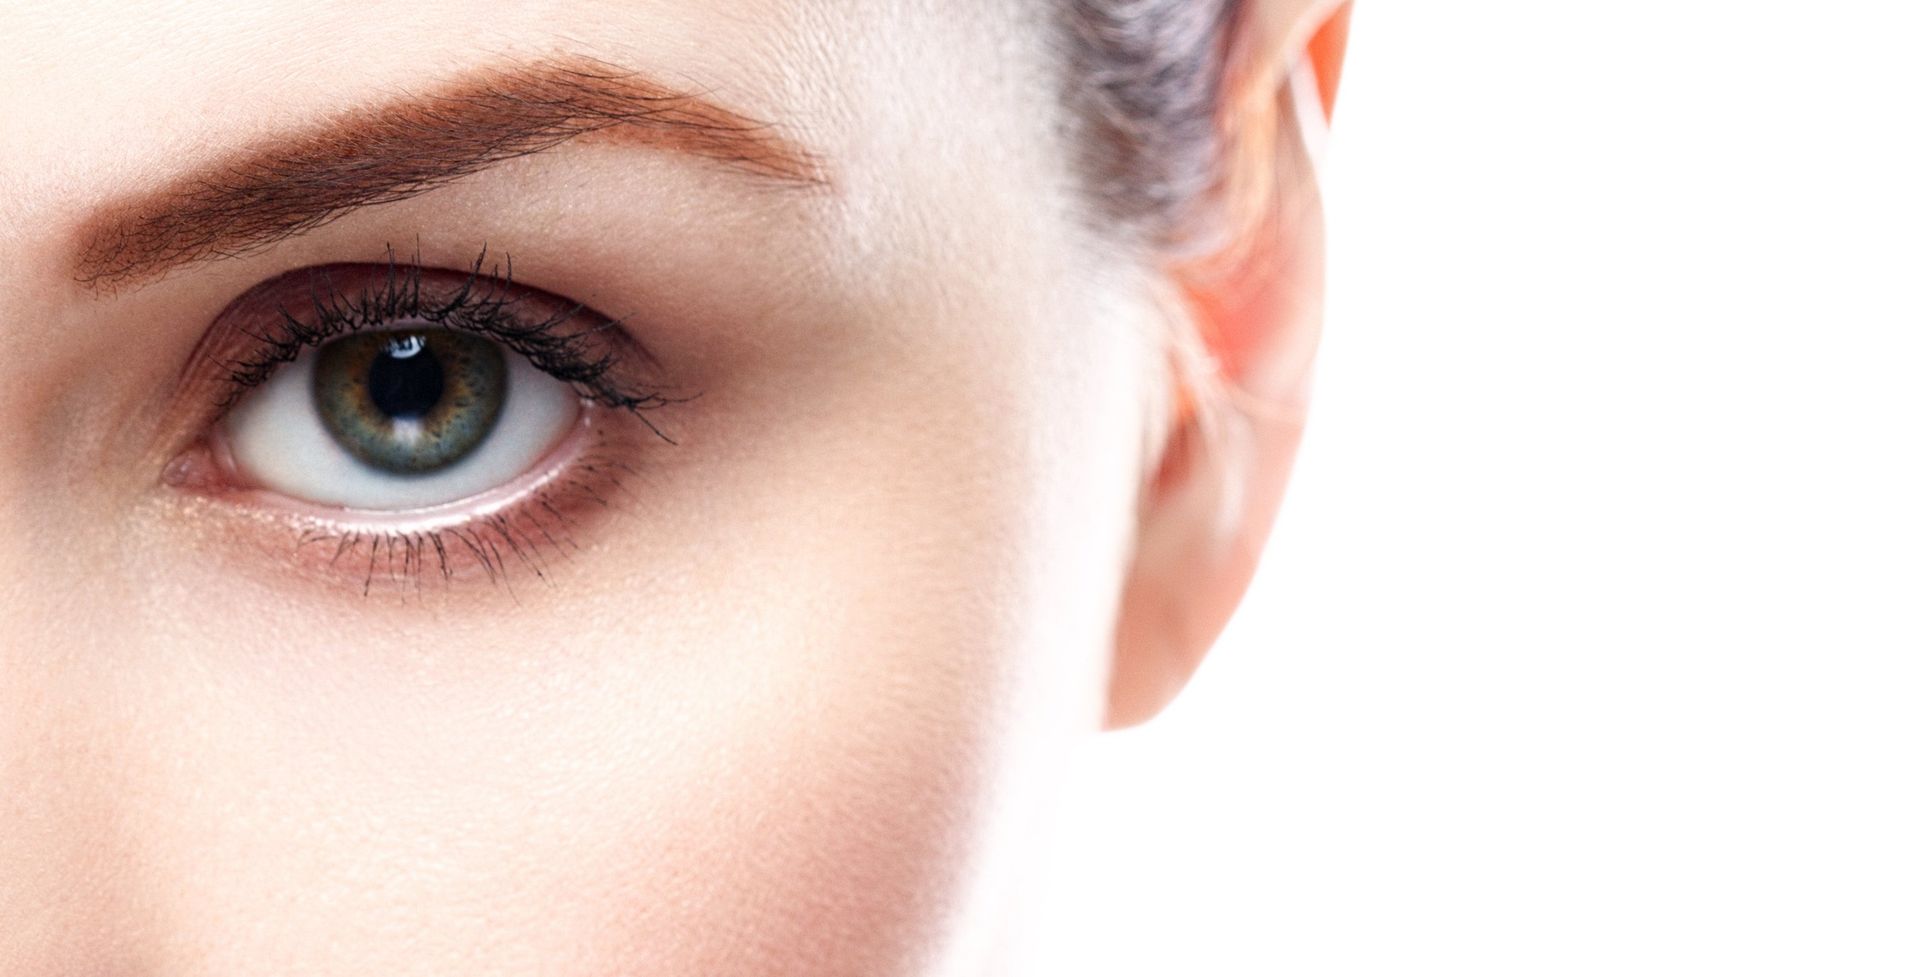 a close up of a woman's eye and ear on a white background.